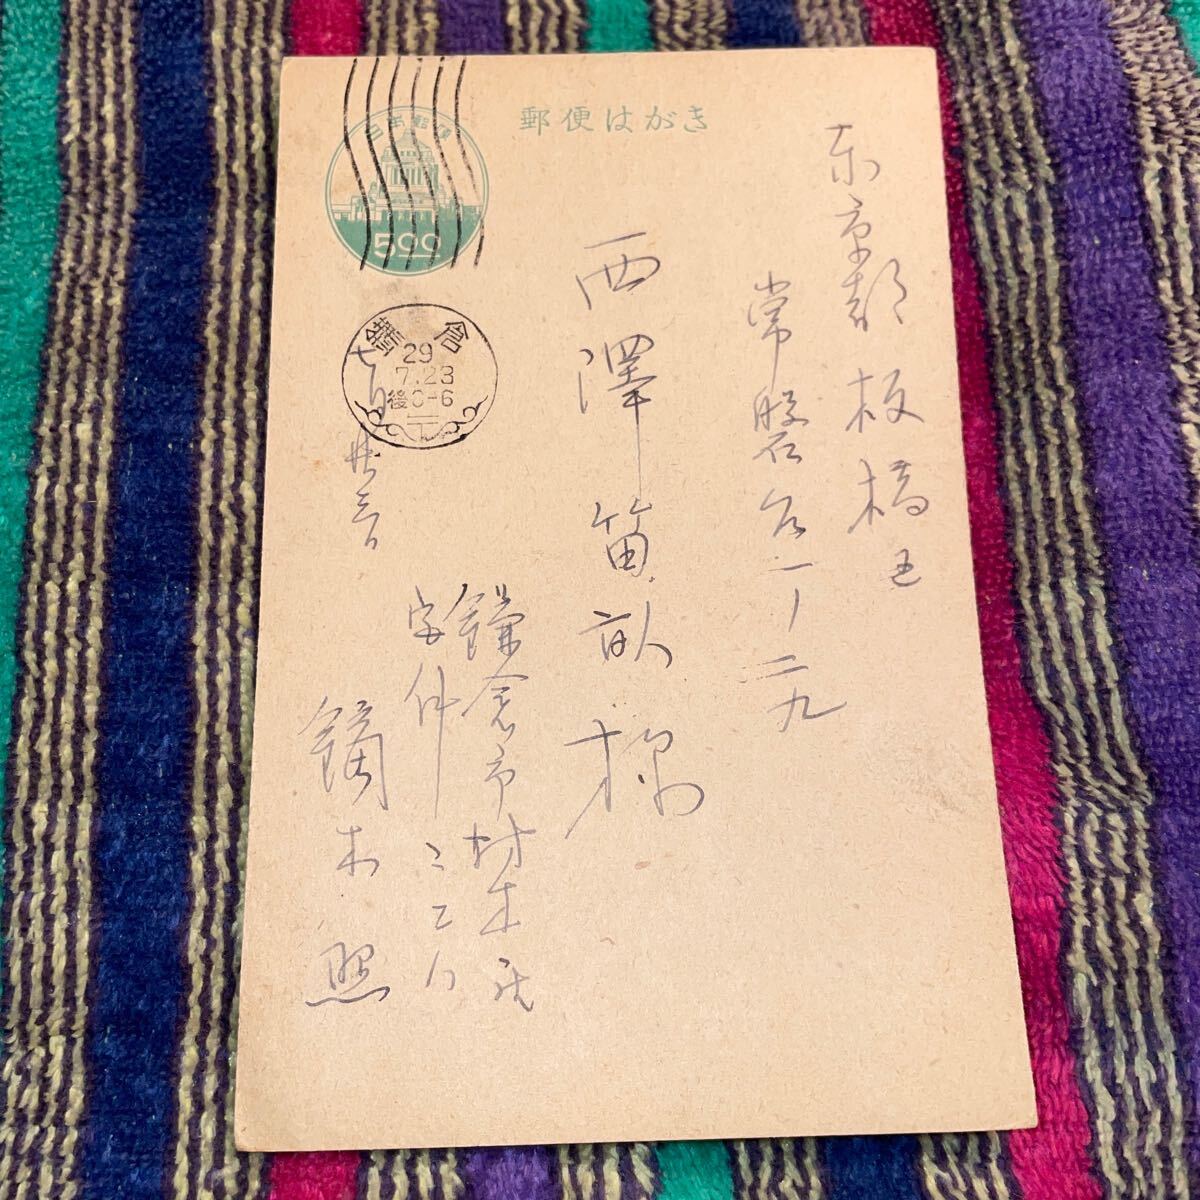 来自镝木清方的妻子(Teru), 西泽笔音(著名人偶研究者), 这是一张献给收藏家的明信片。明信片, 绘画, 油画, 其他的